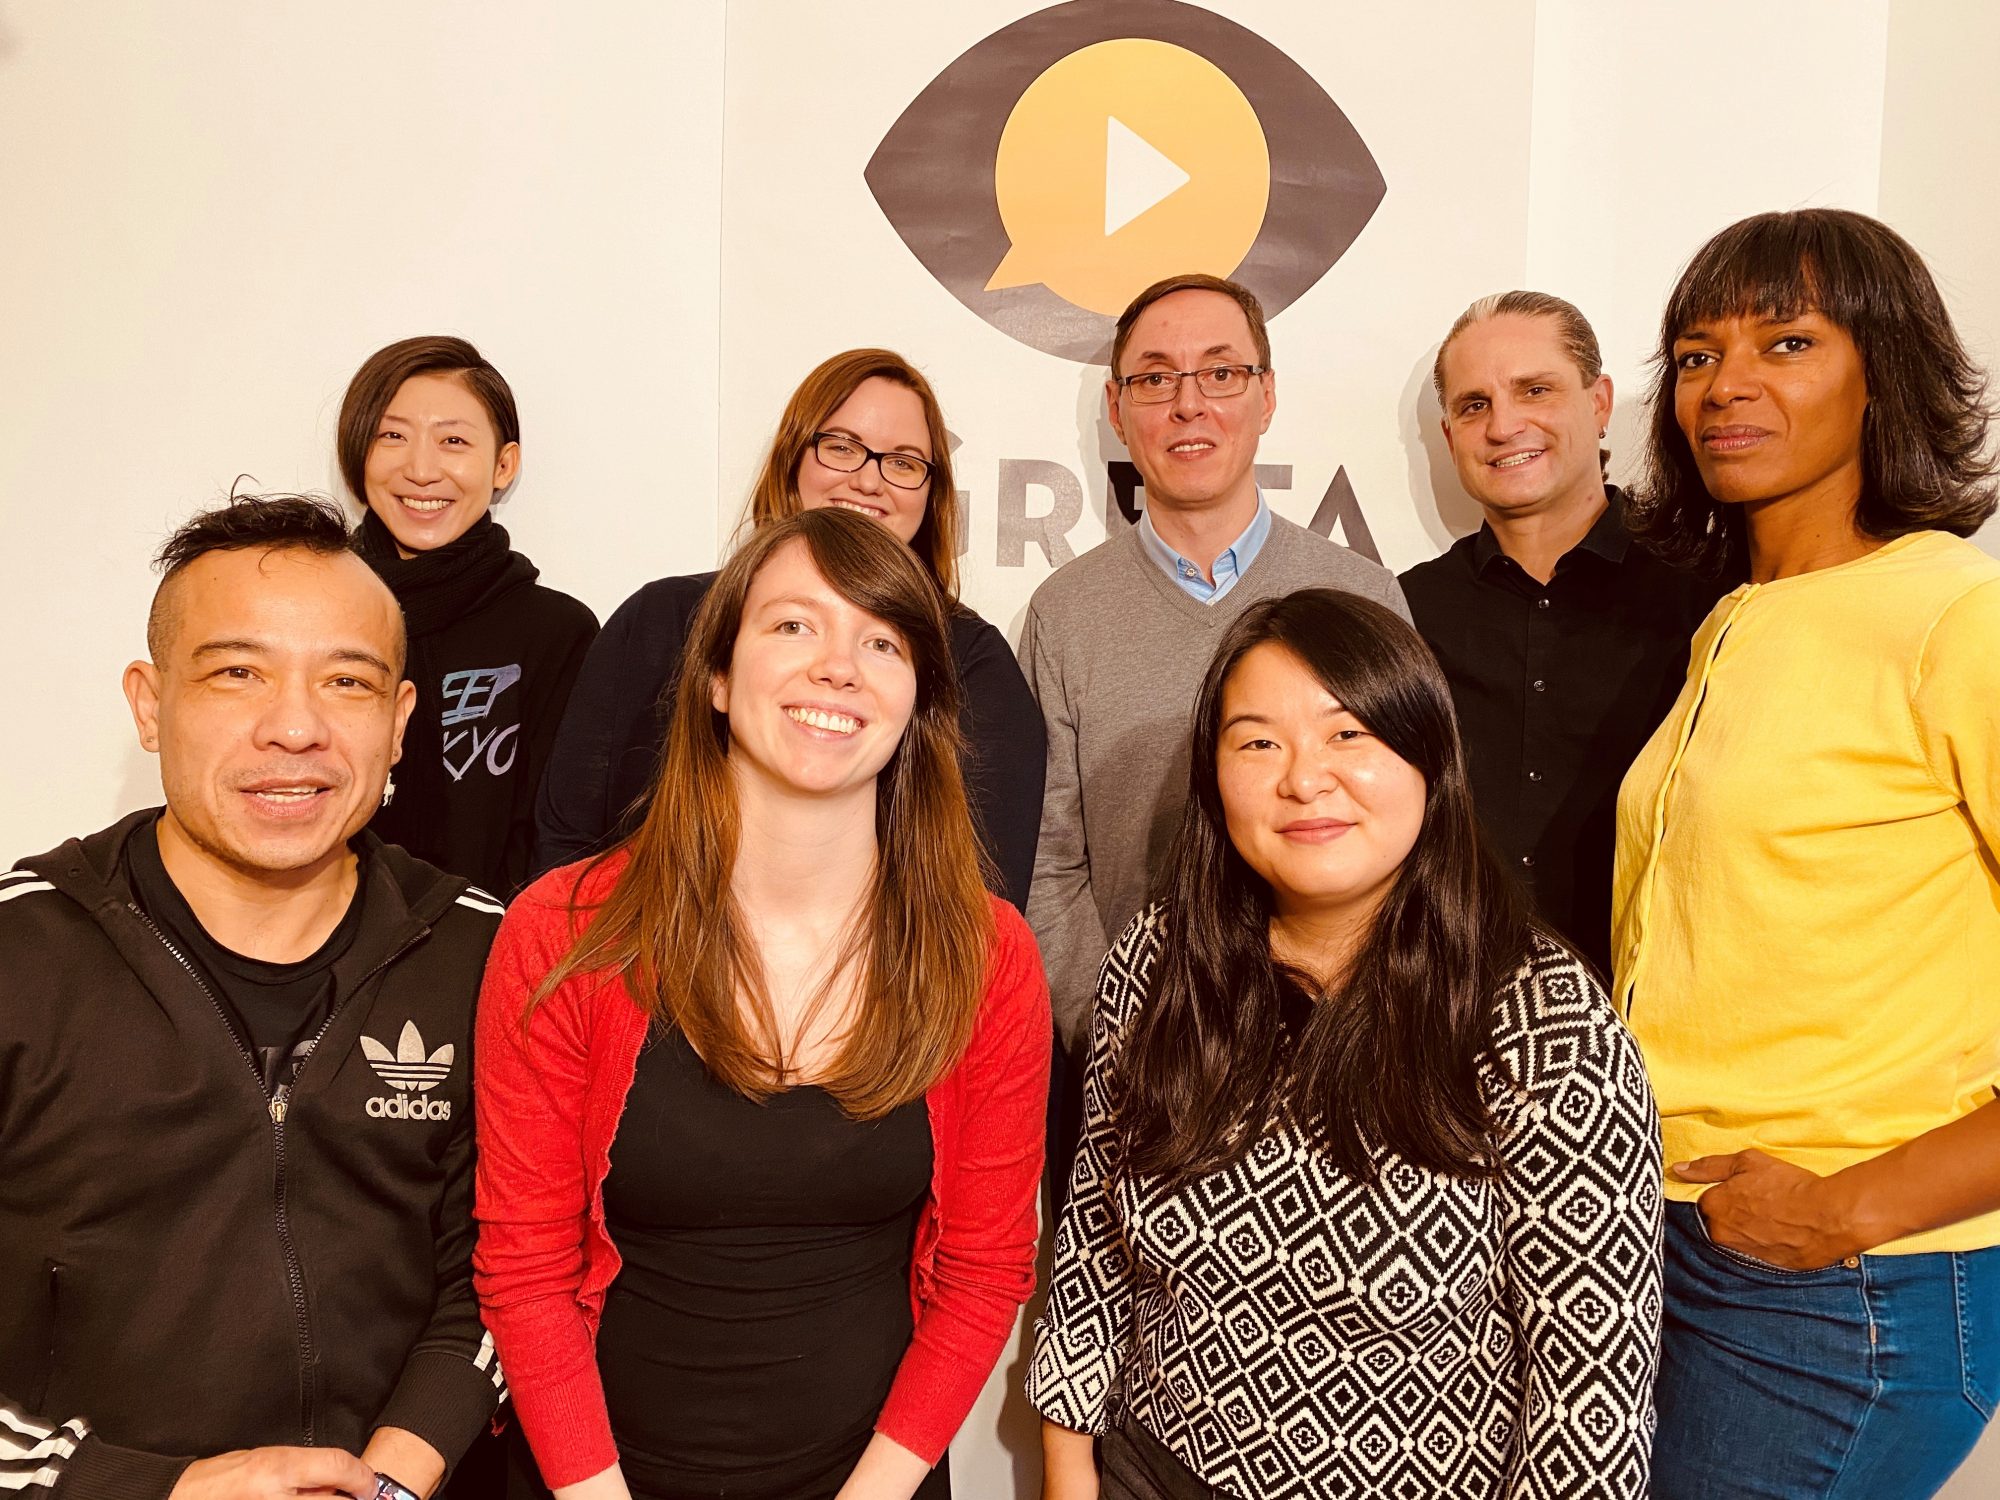 Das Team von Greta & Starks im Dezember 2019. Das Bild zeigt acht Personen vor dem Greta-Logo.